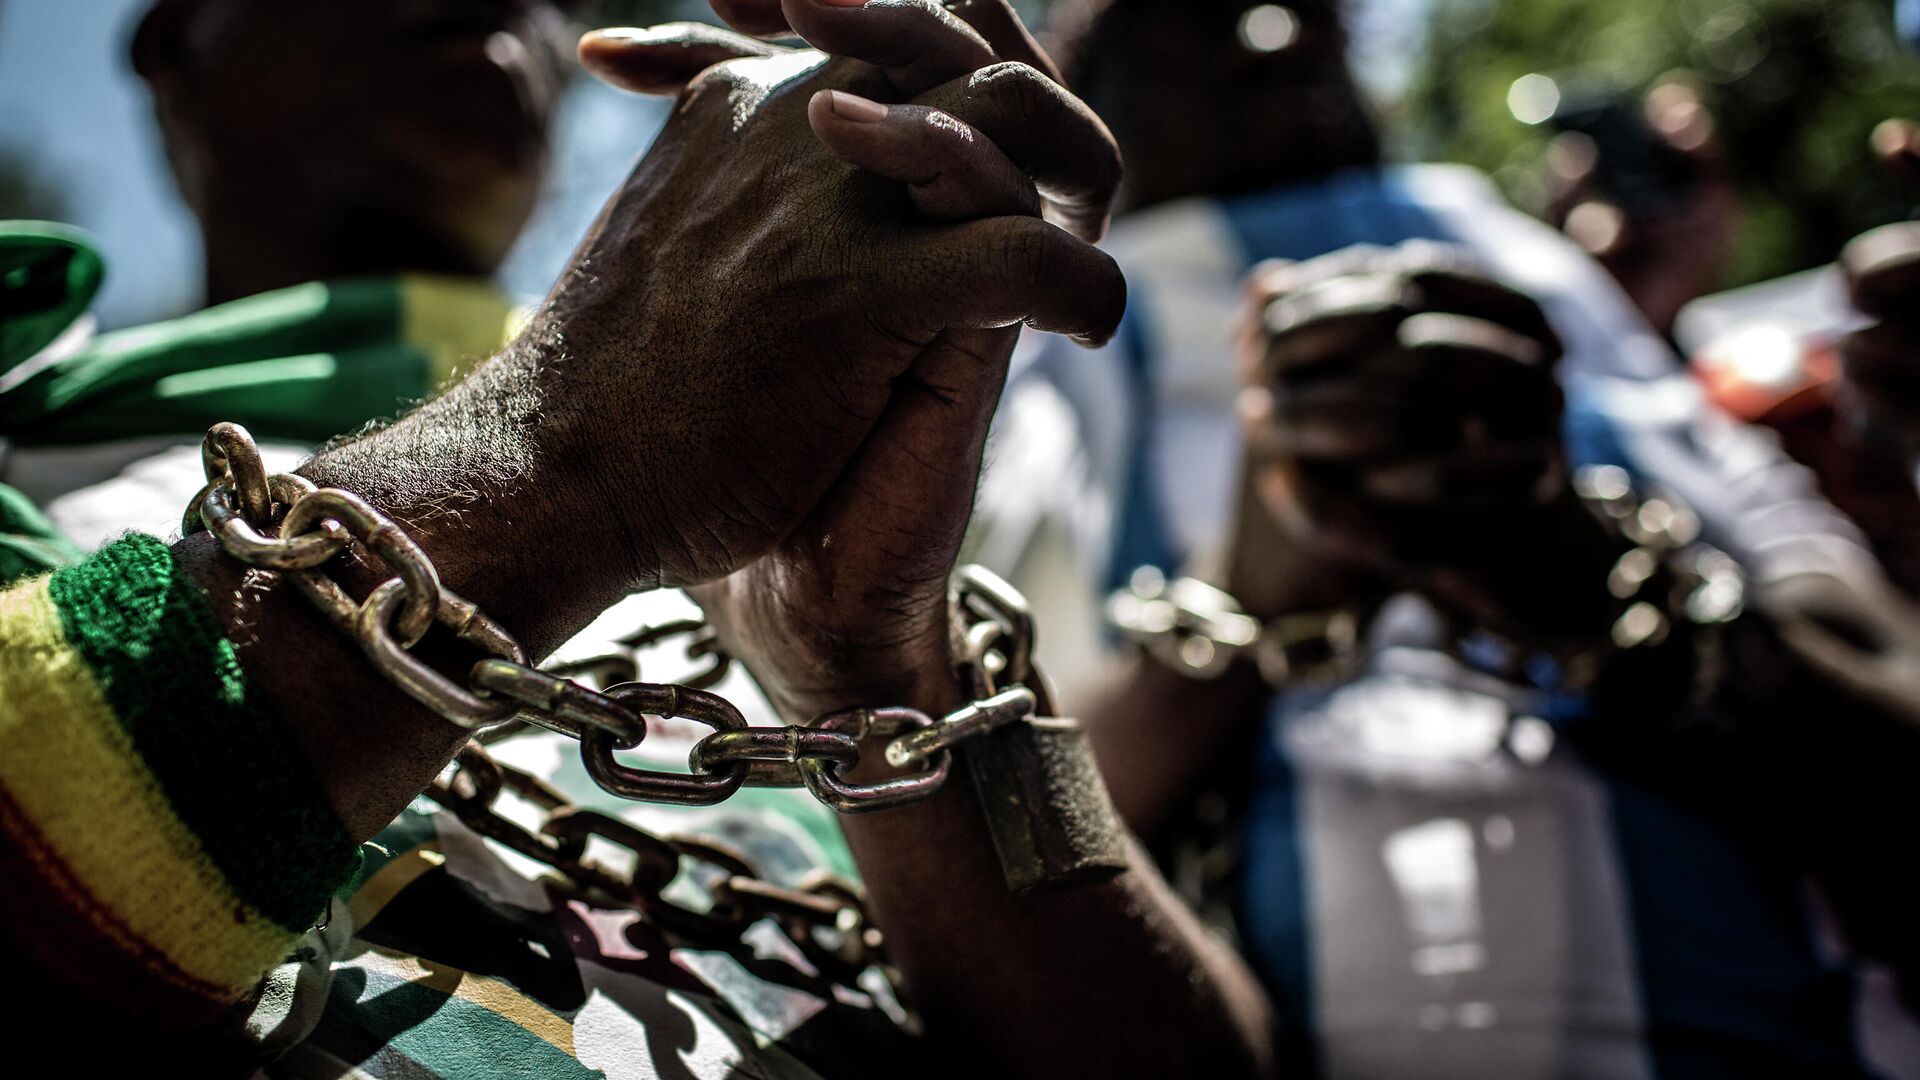 Члены Форума африканской диаспоры (ADF) с цепями на руках в знак демонстрации протеста против работорговли и торговли людьми - РИА Новости, 1920, 23.08.2021